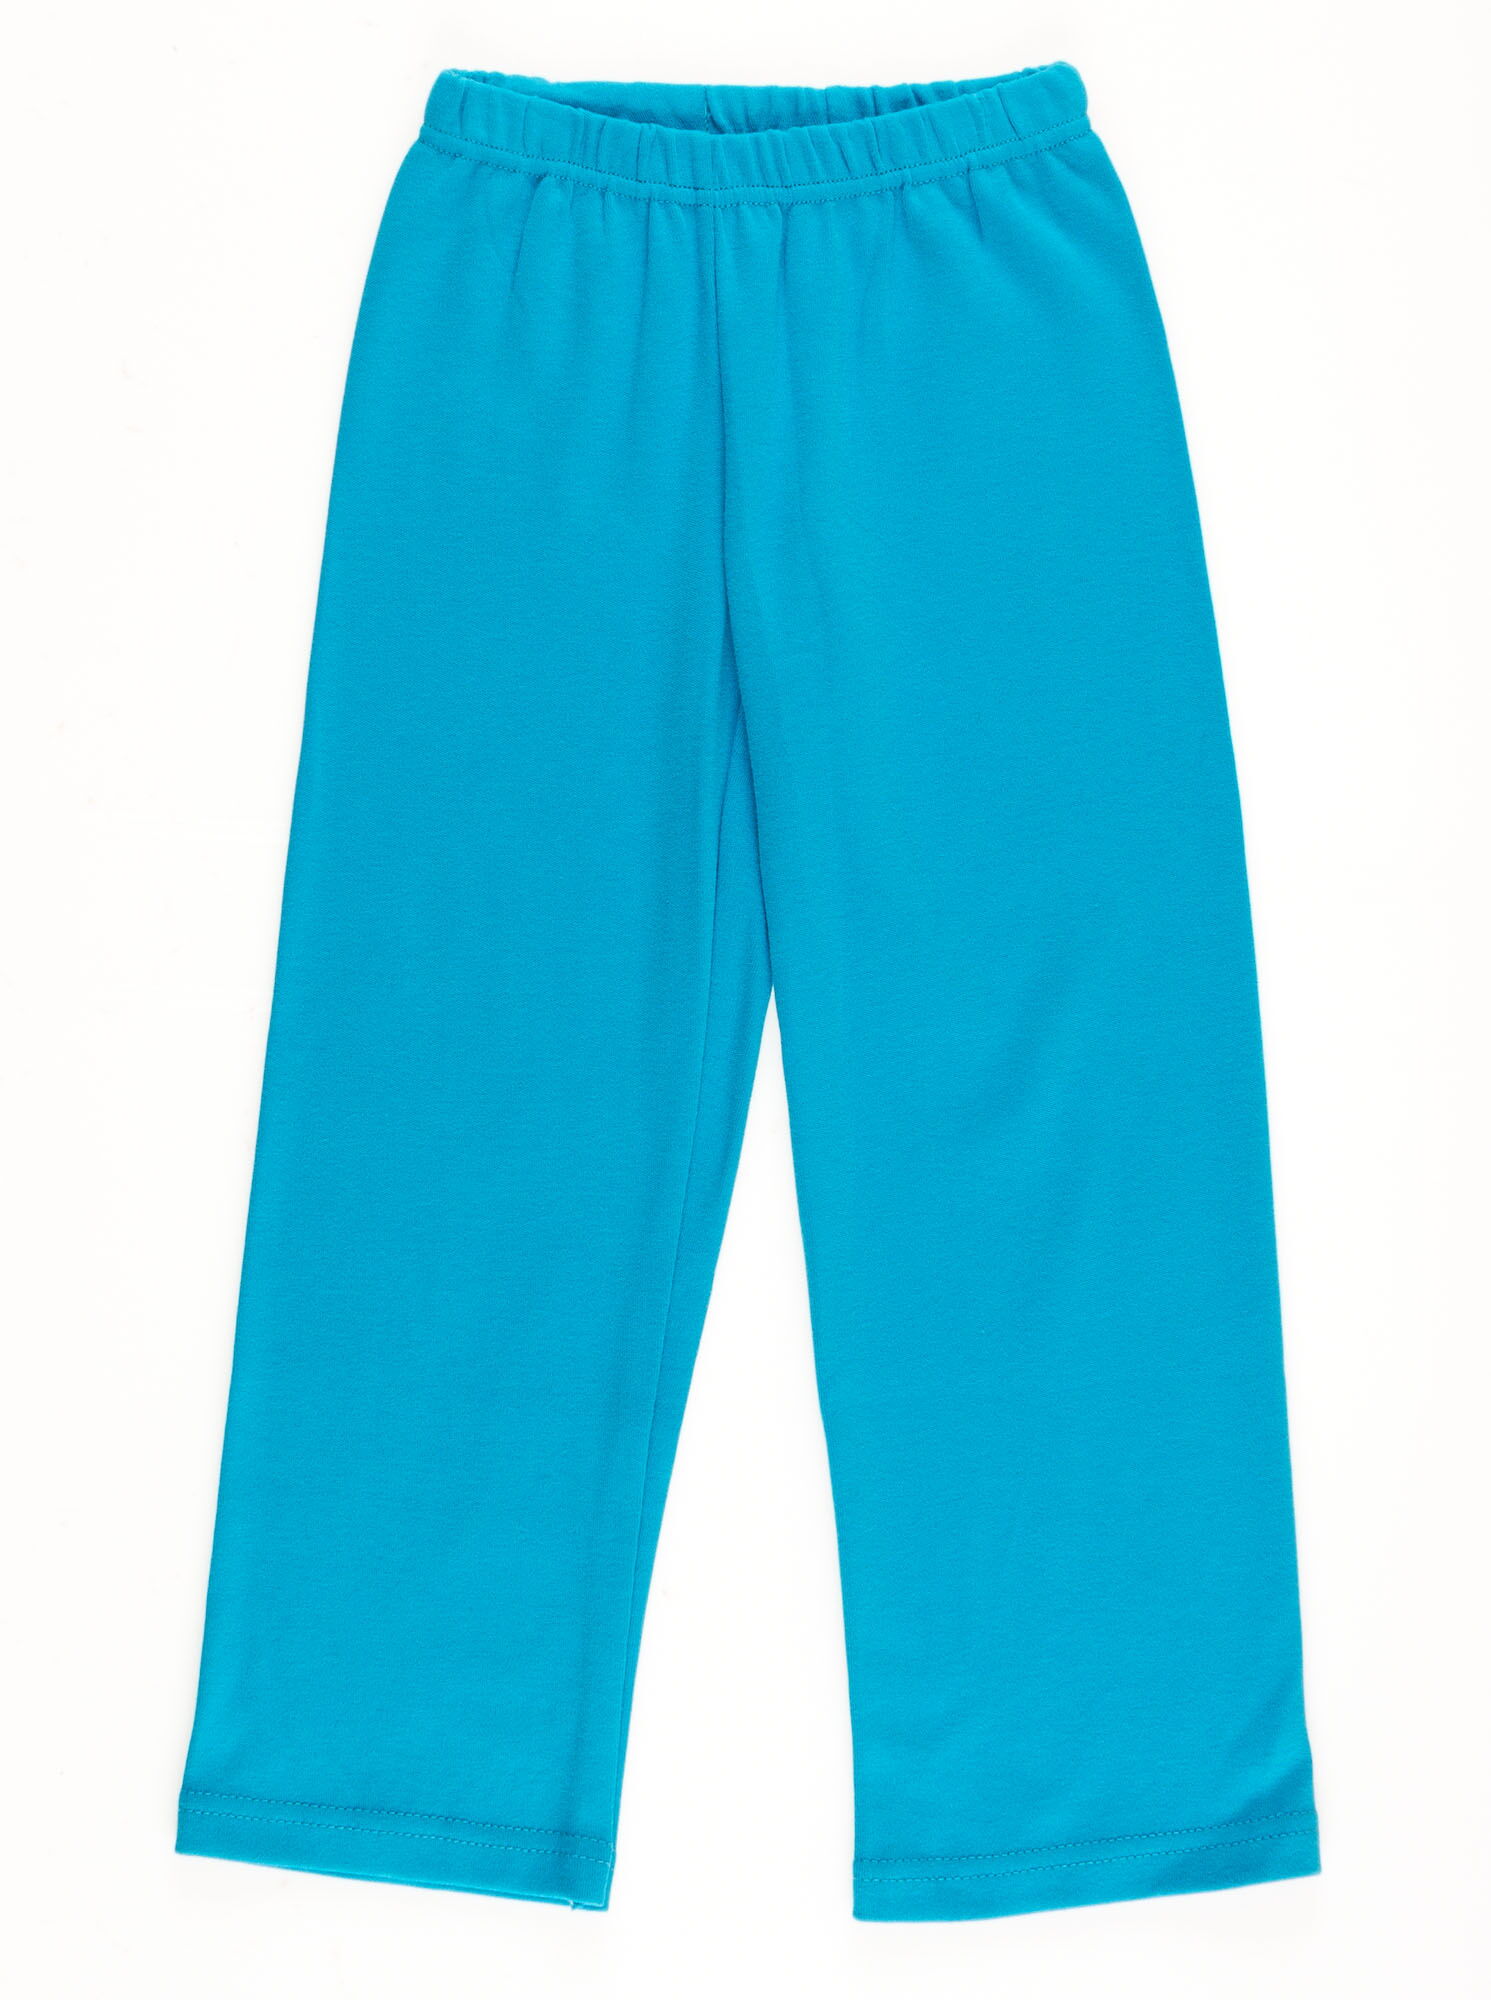 Пижама для мальчика SMIL Баскетбол голубая104305 - купить